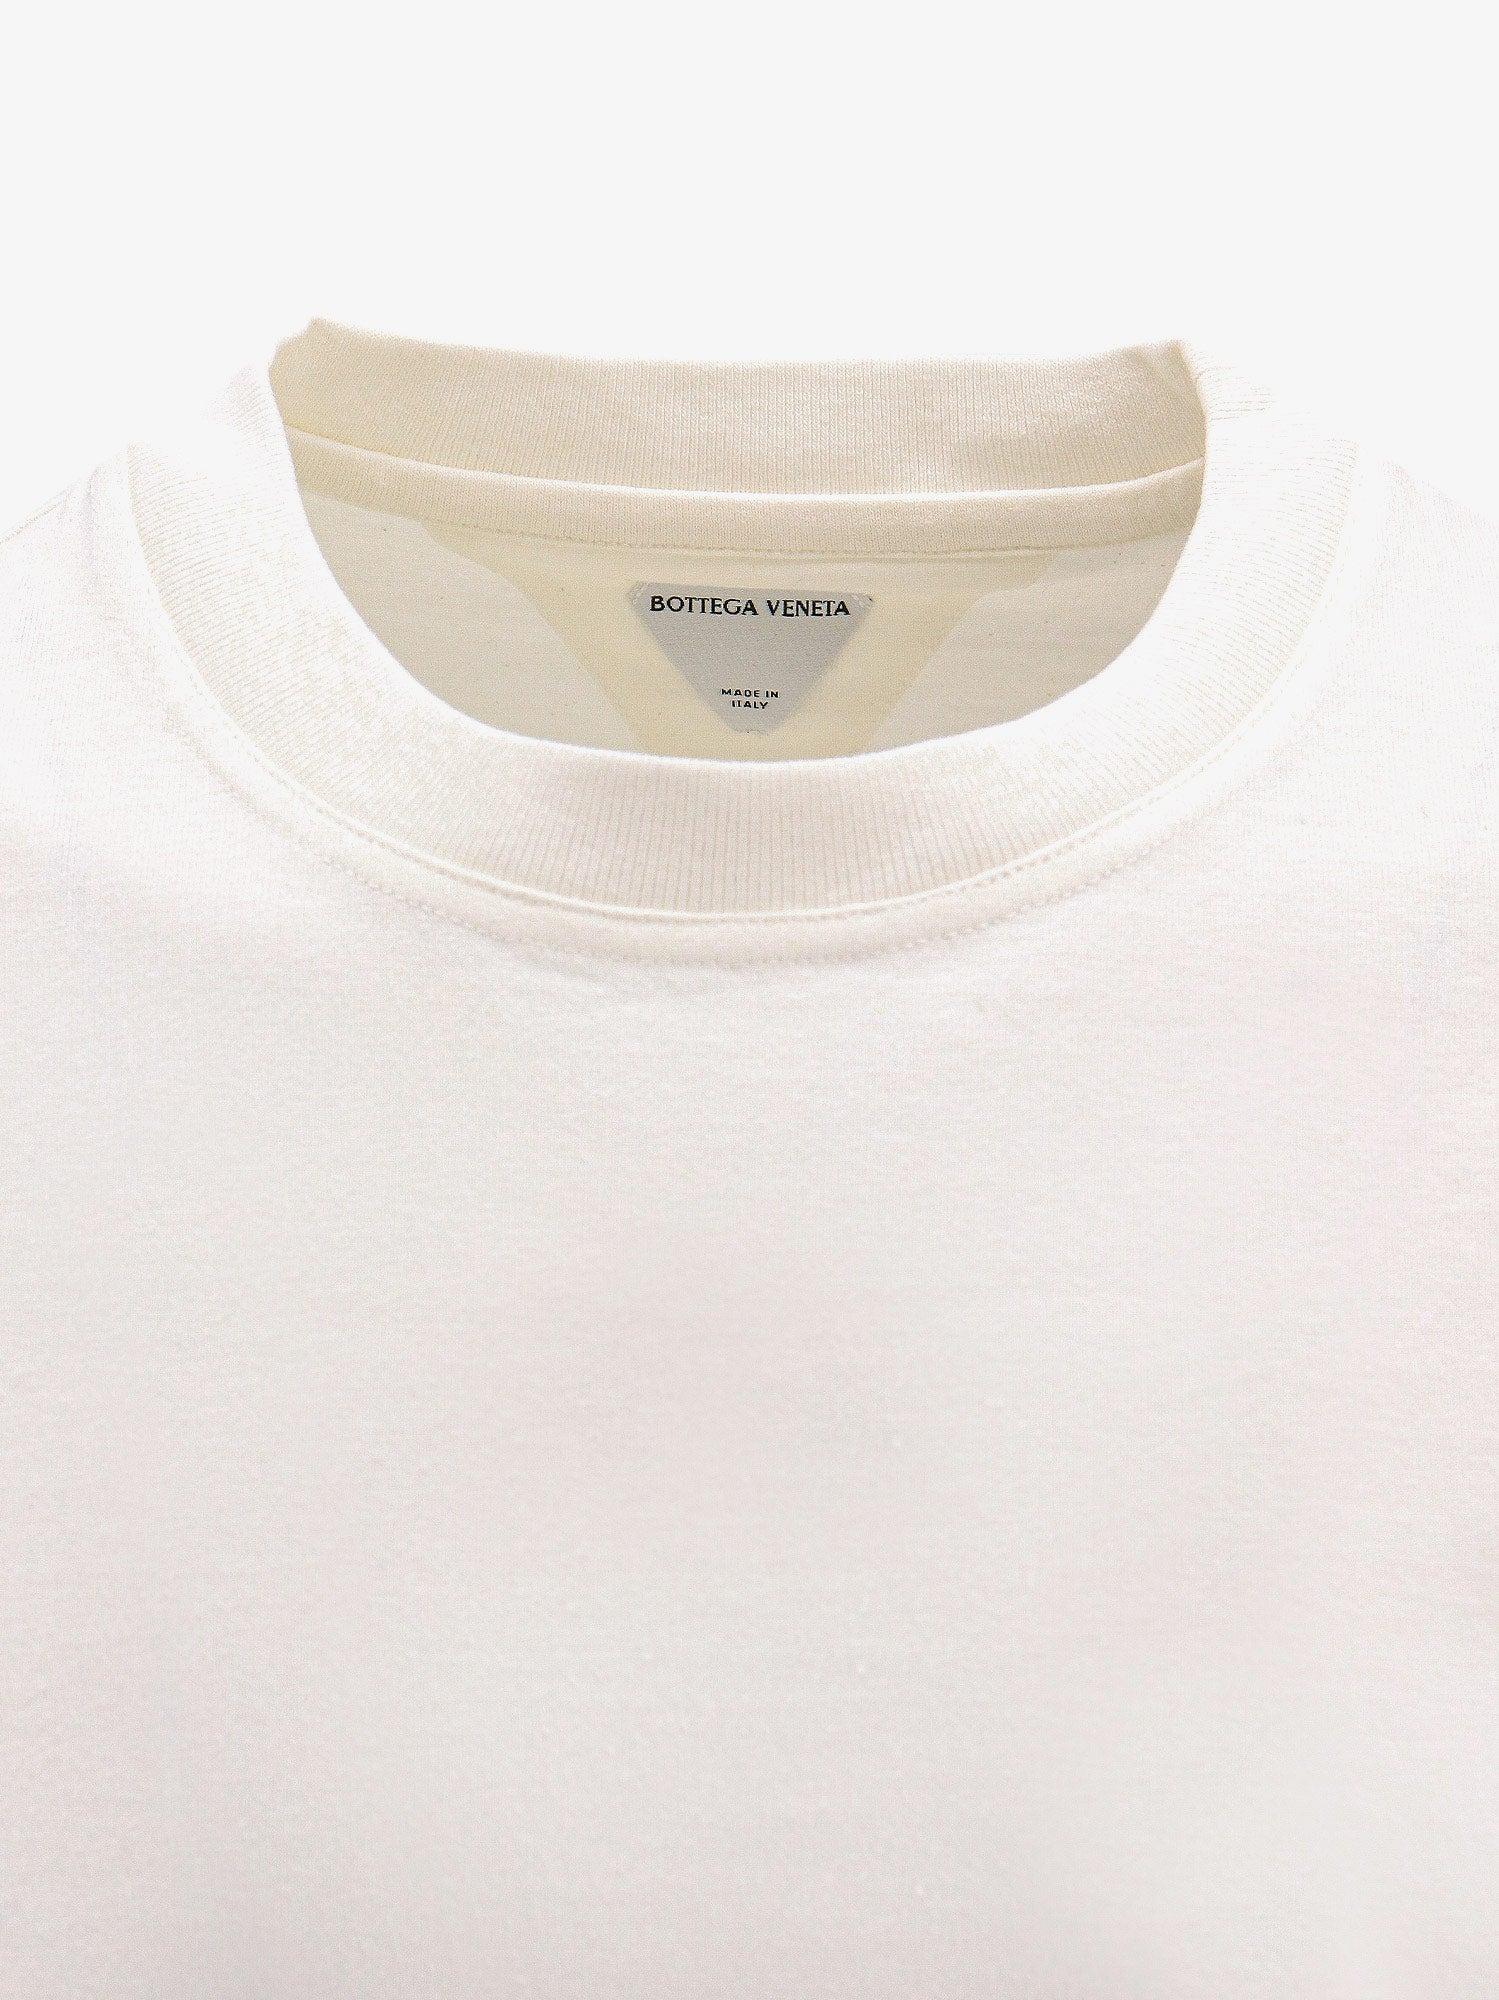 Bottega Veneta T-shirt in White for Men | Lyst